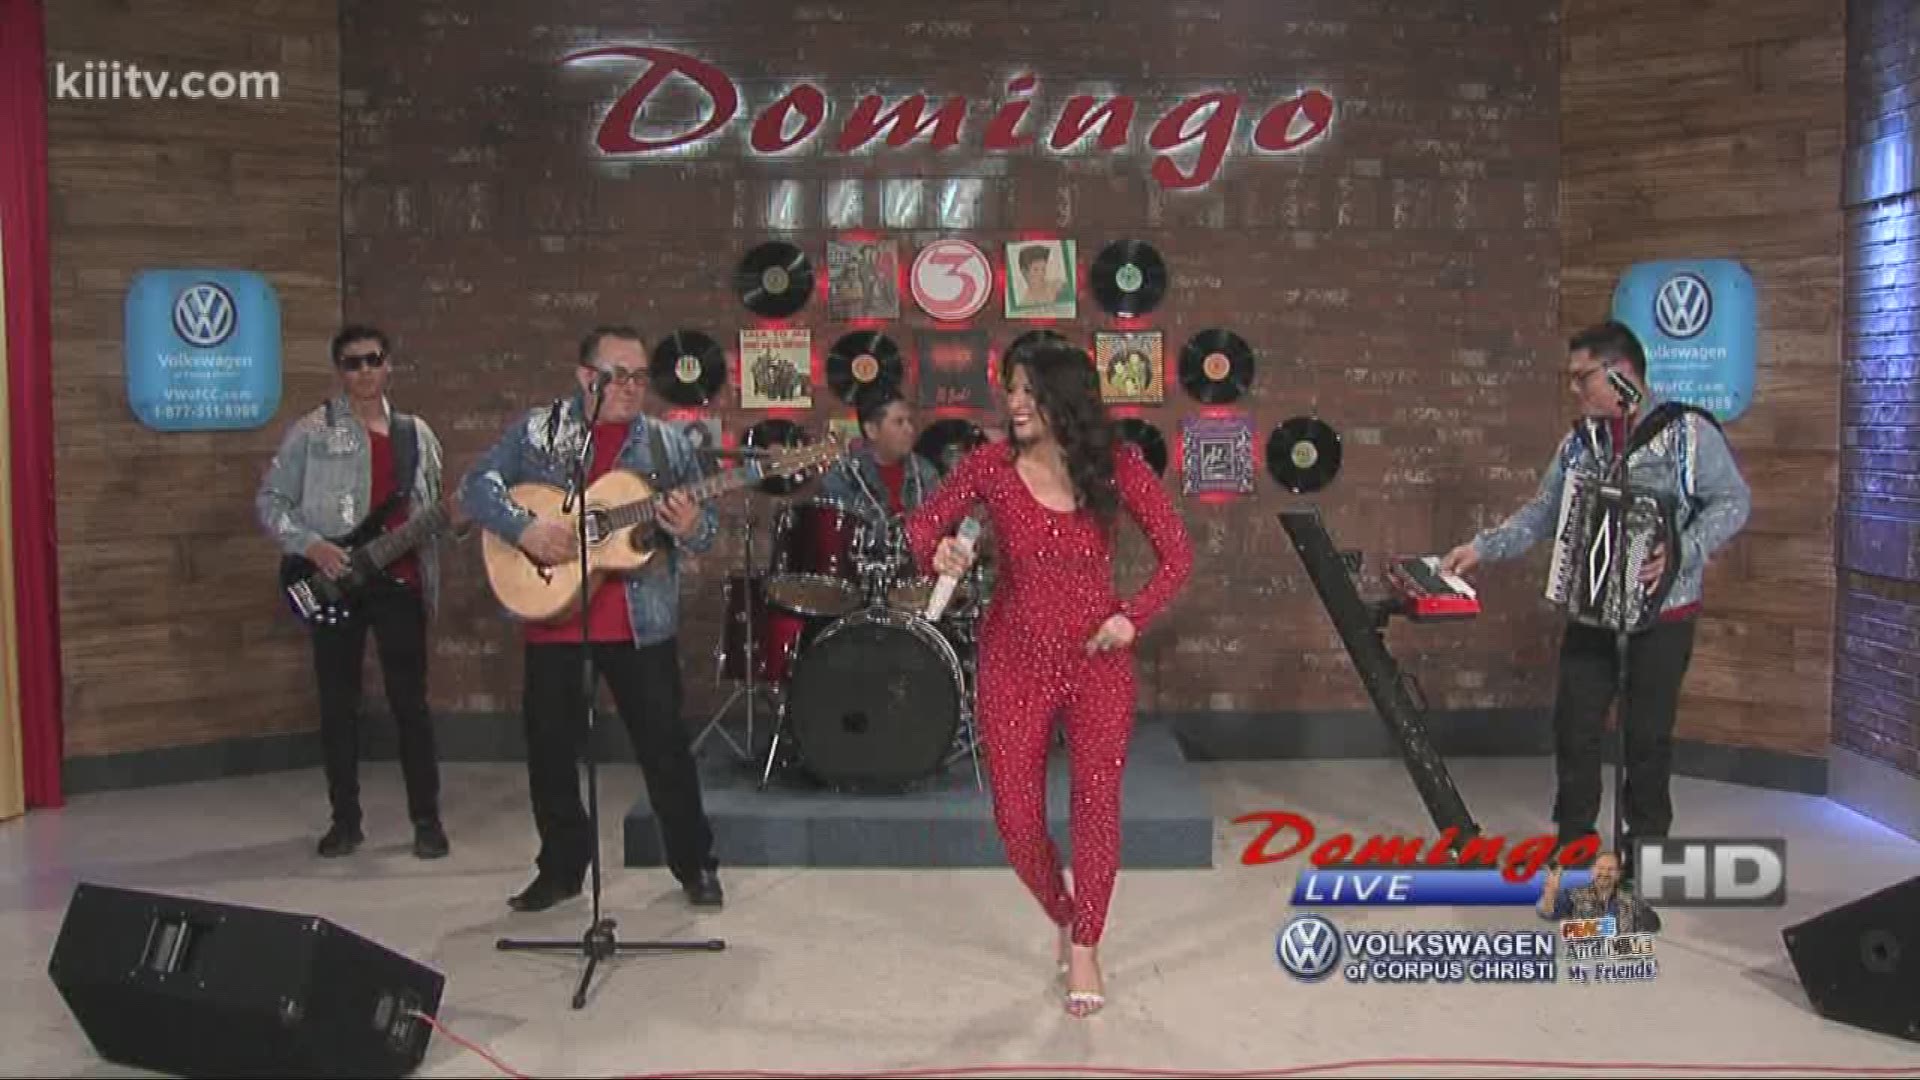 Magali Delarosa performing "Solo Que Te Quiero" on Domingo Live.